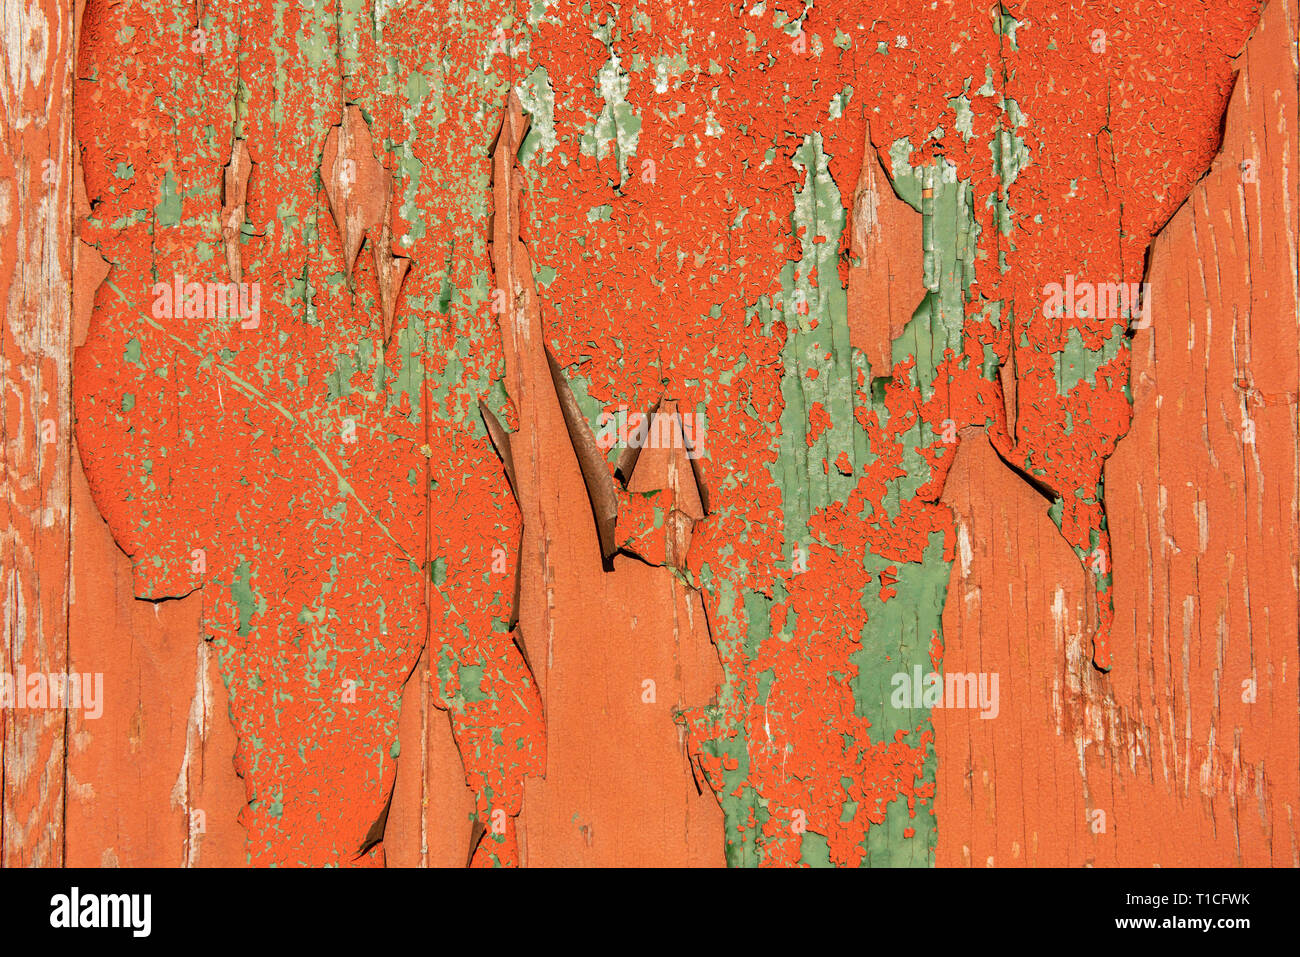 Vieux vert et orange, la peinture s'écaille sur une surface en bois Banque D'Images